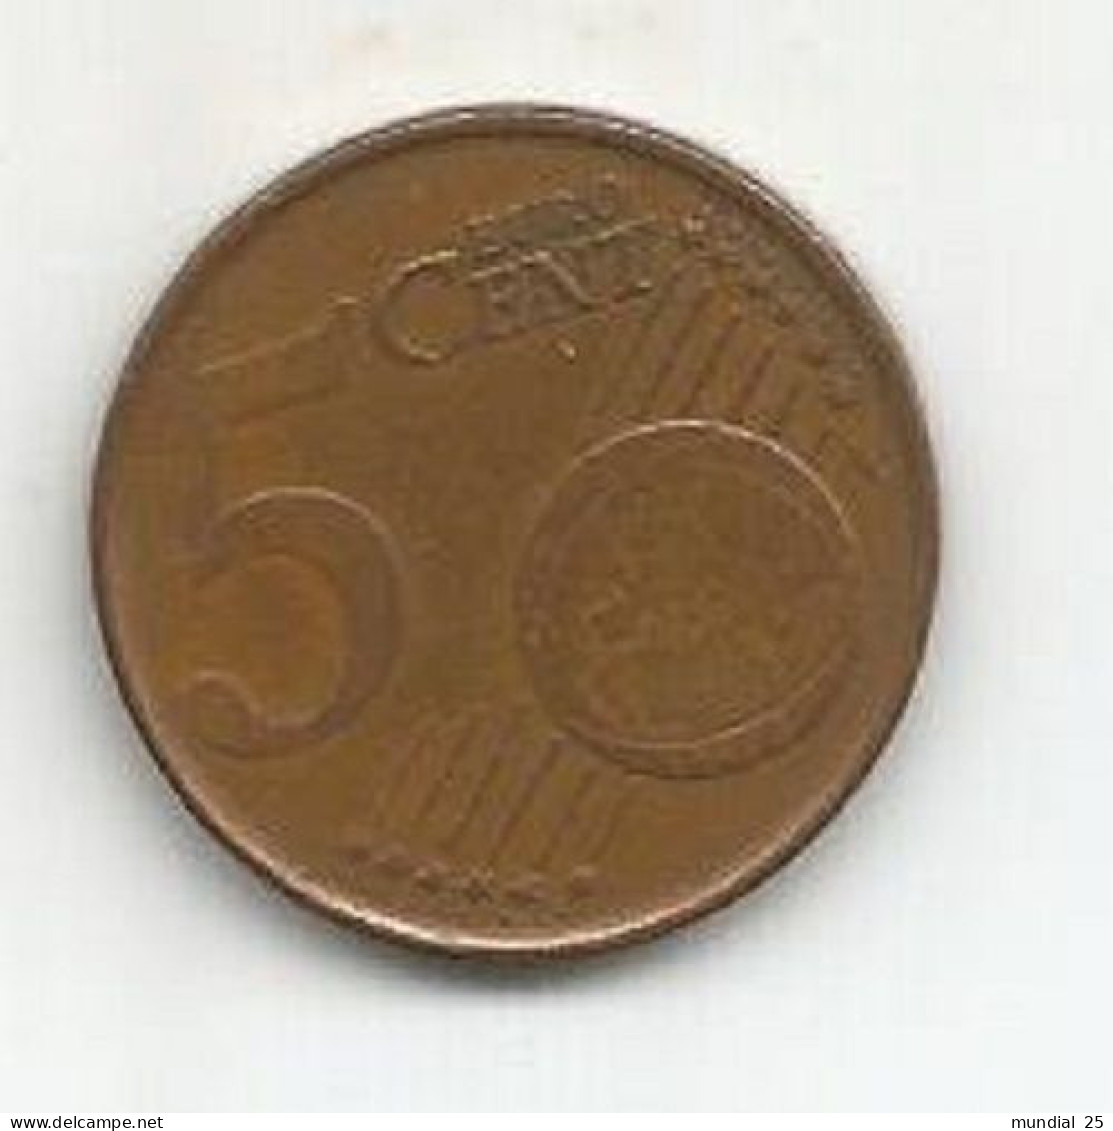 BELGIUM 5 EURO CENT 1999 - Belgium